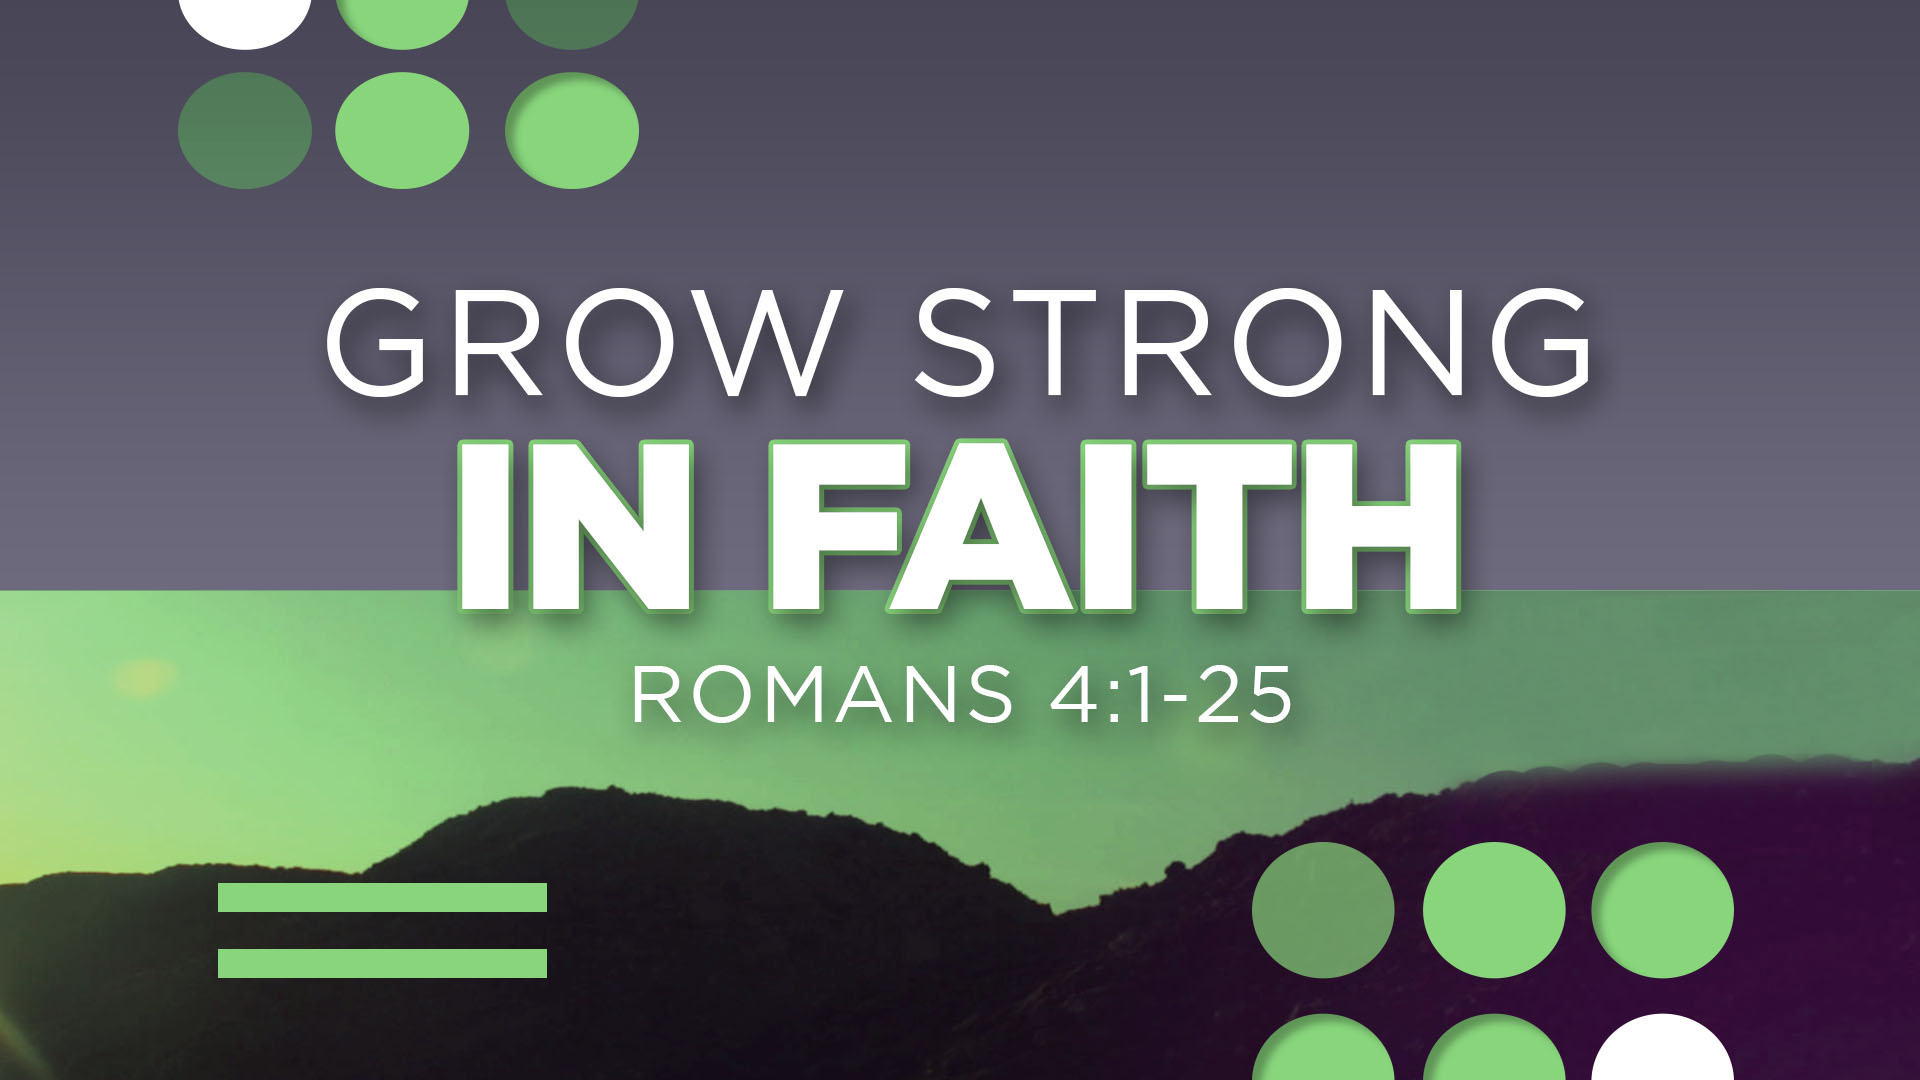 Grow Strong in Faith